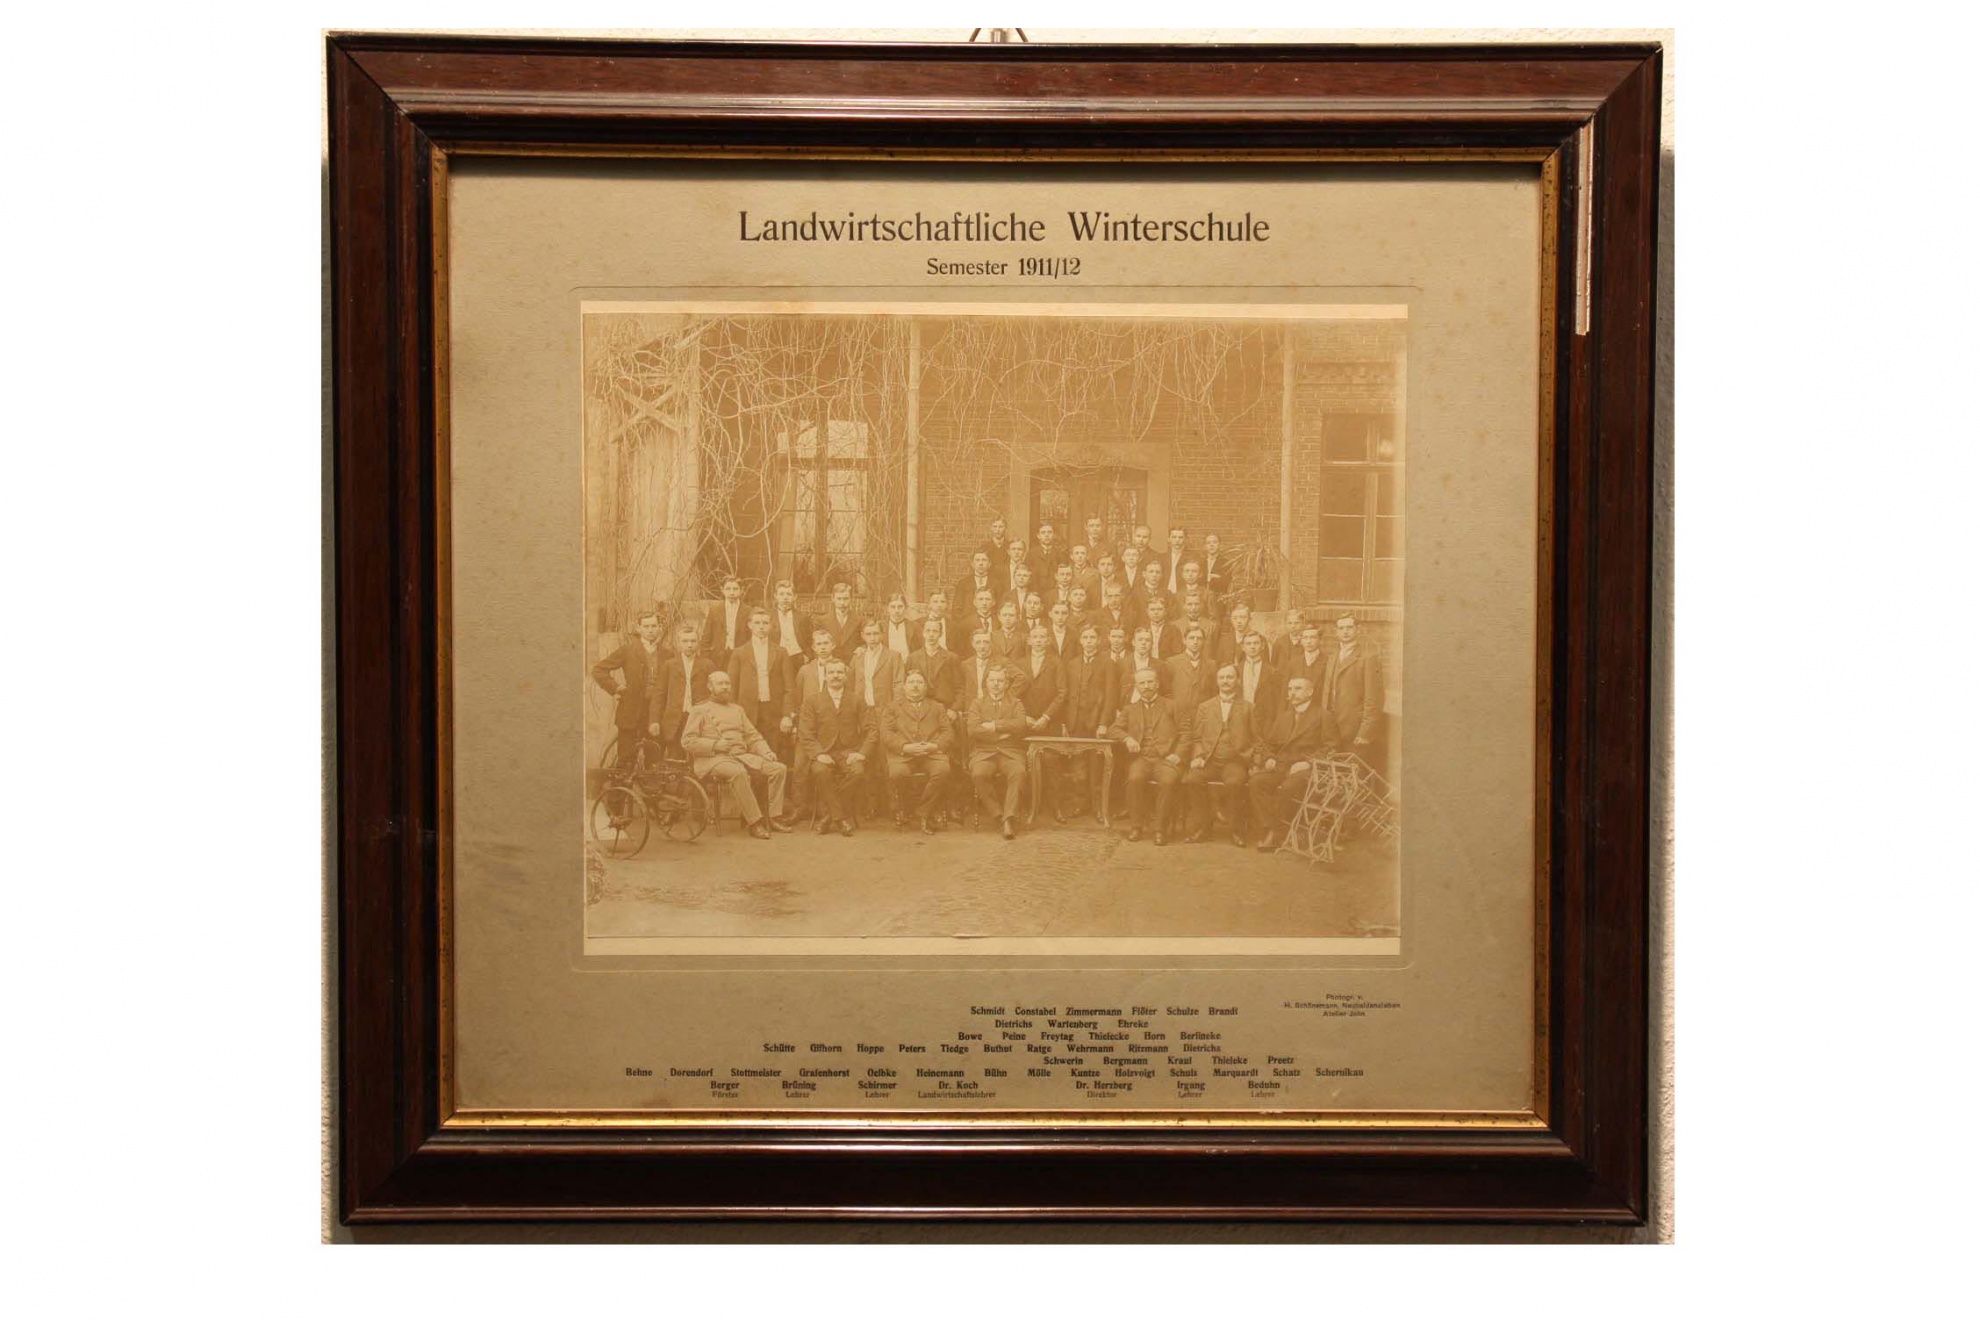 Fotografie, gerahmt, Landwirtschaftliche Winterschule (Museum Wolmirstedt RR-F)